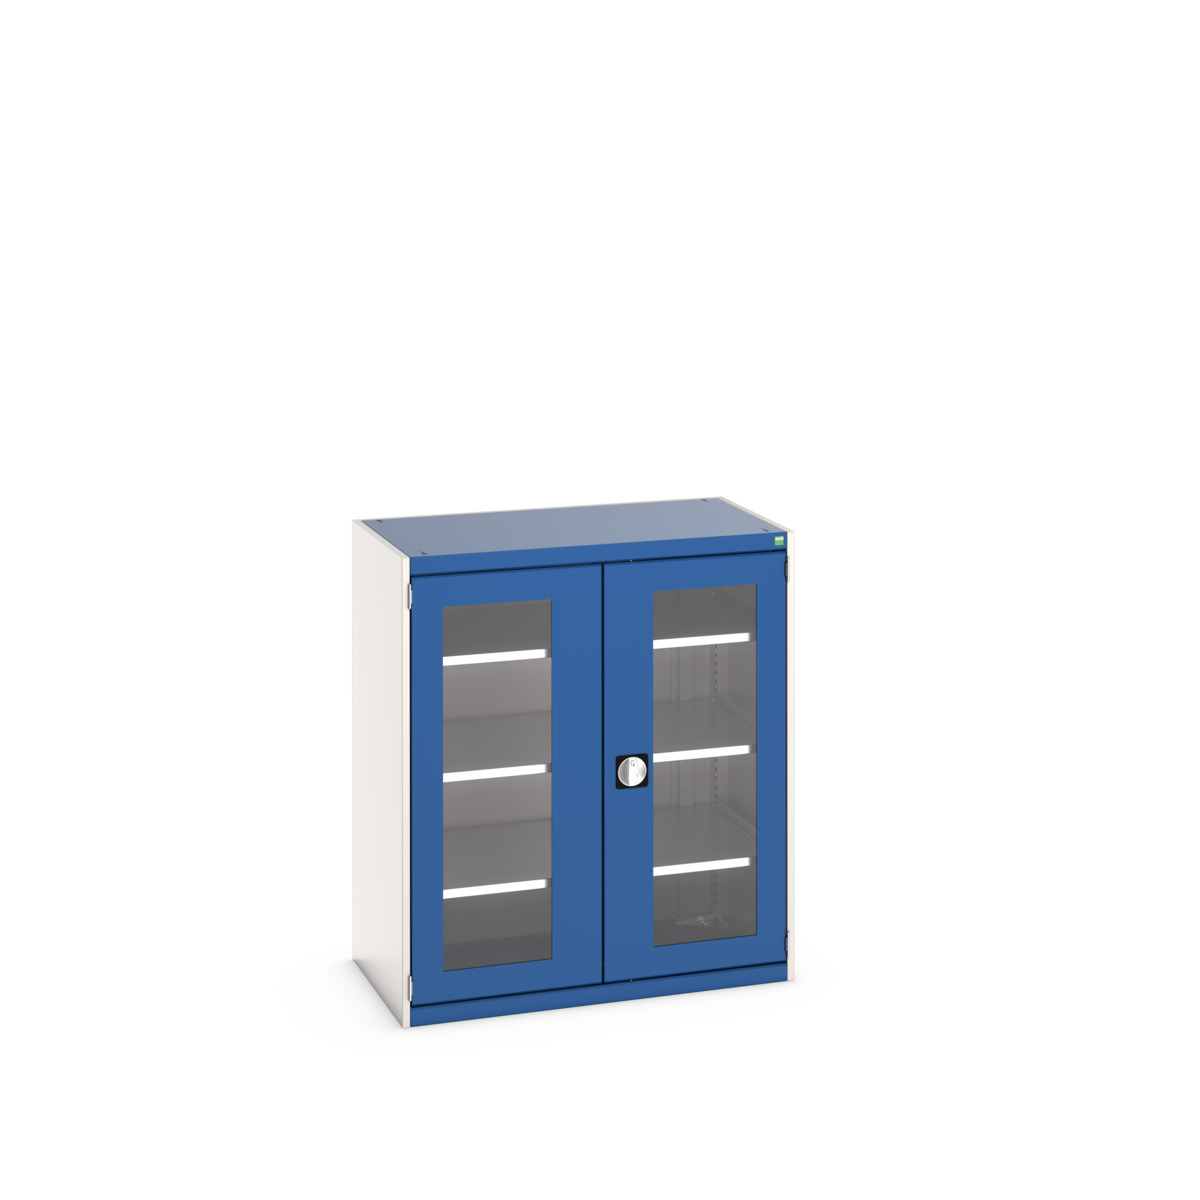 40021131.11V - cubio cupboard